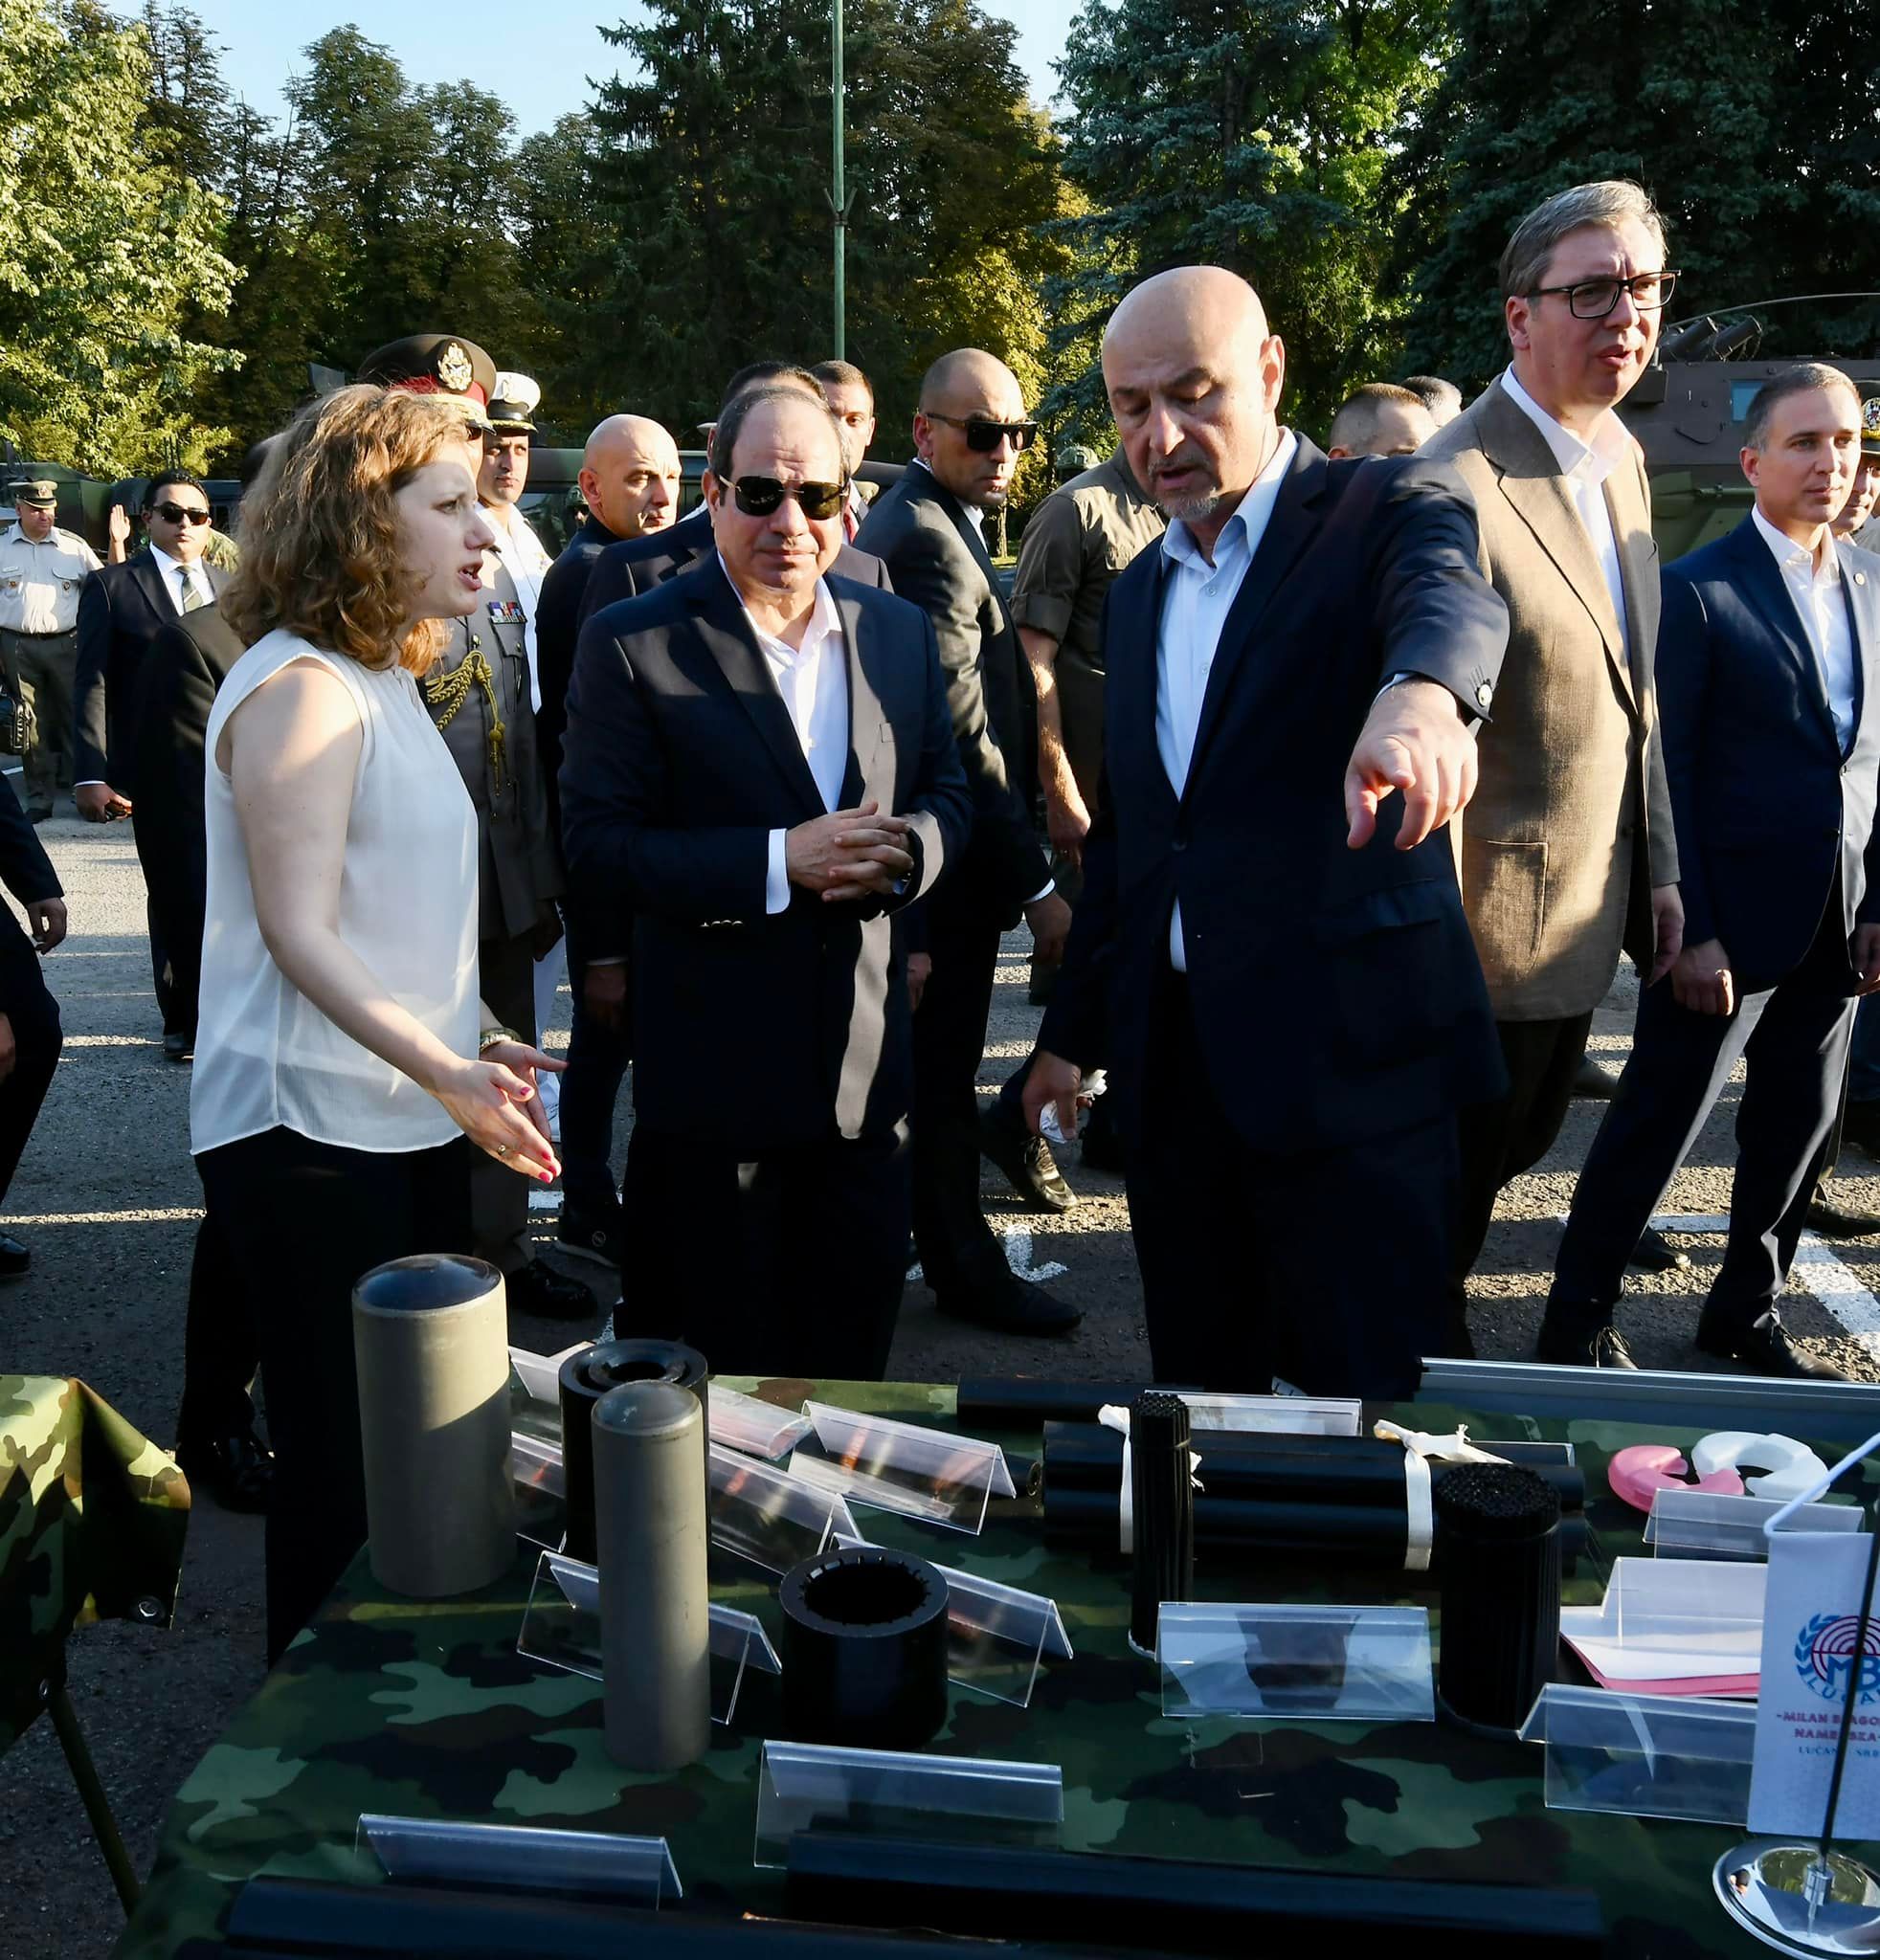 الرئيس السيسى يشهد عرضا لأسلحة القوات المسلحة الصربية والمعدات العسكرية